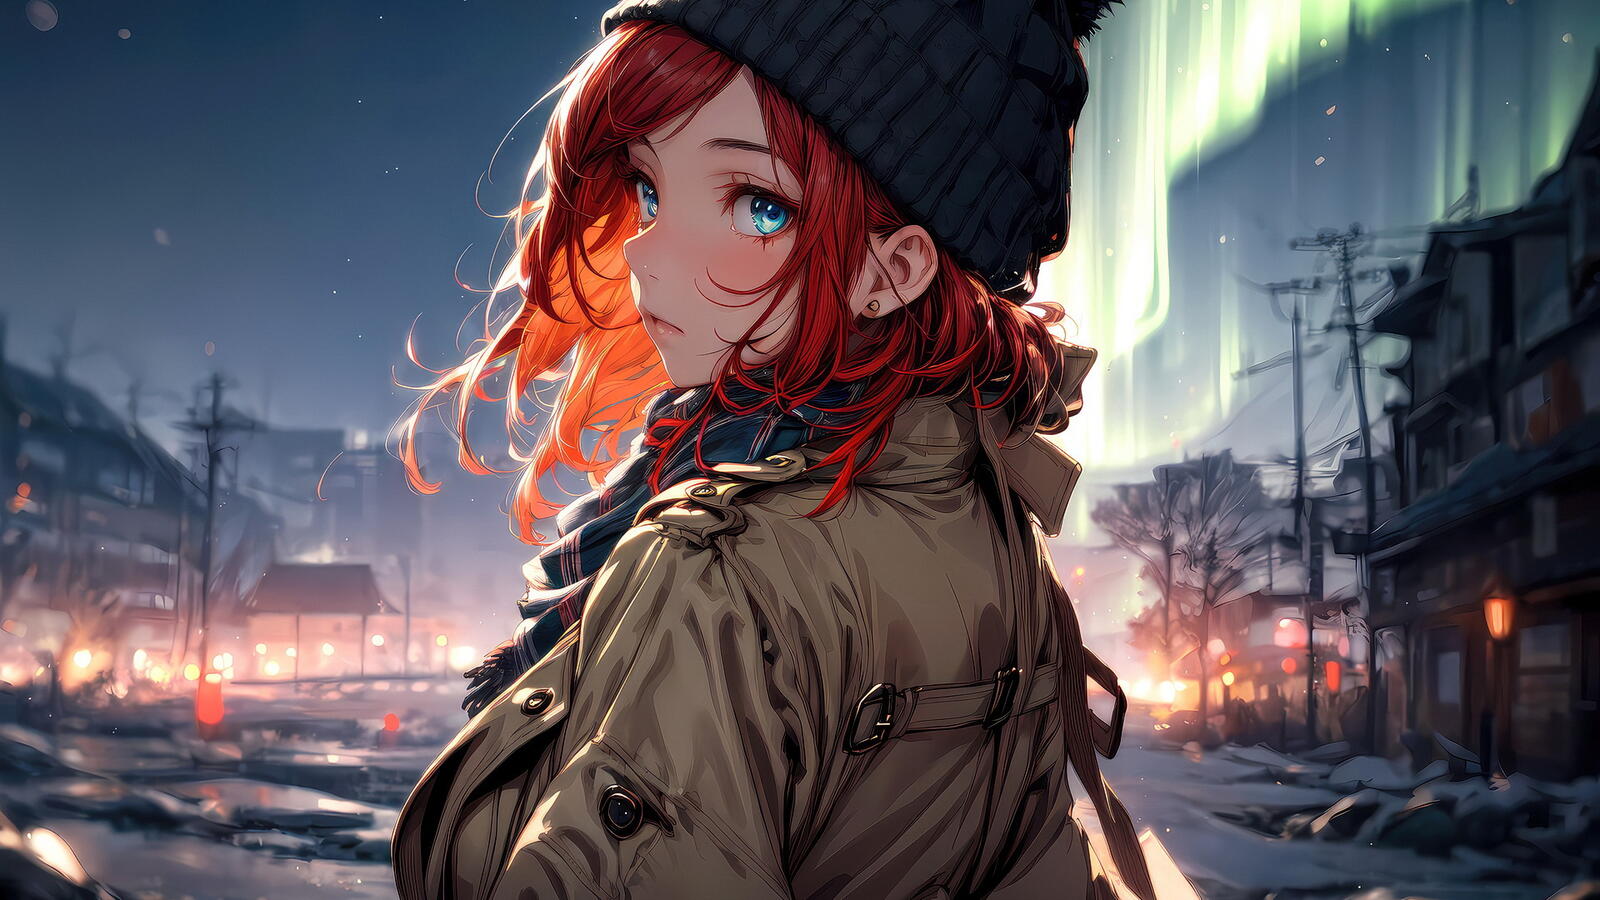 Бесплатное фото Рыжеволосая девушка в шапке стоит на фонезимнего города